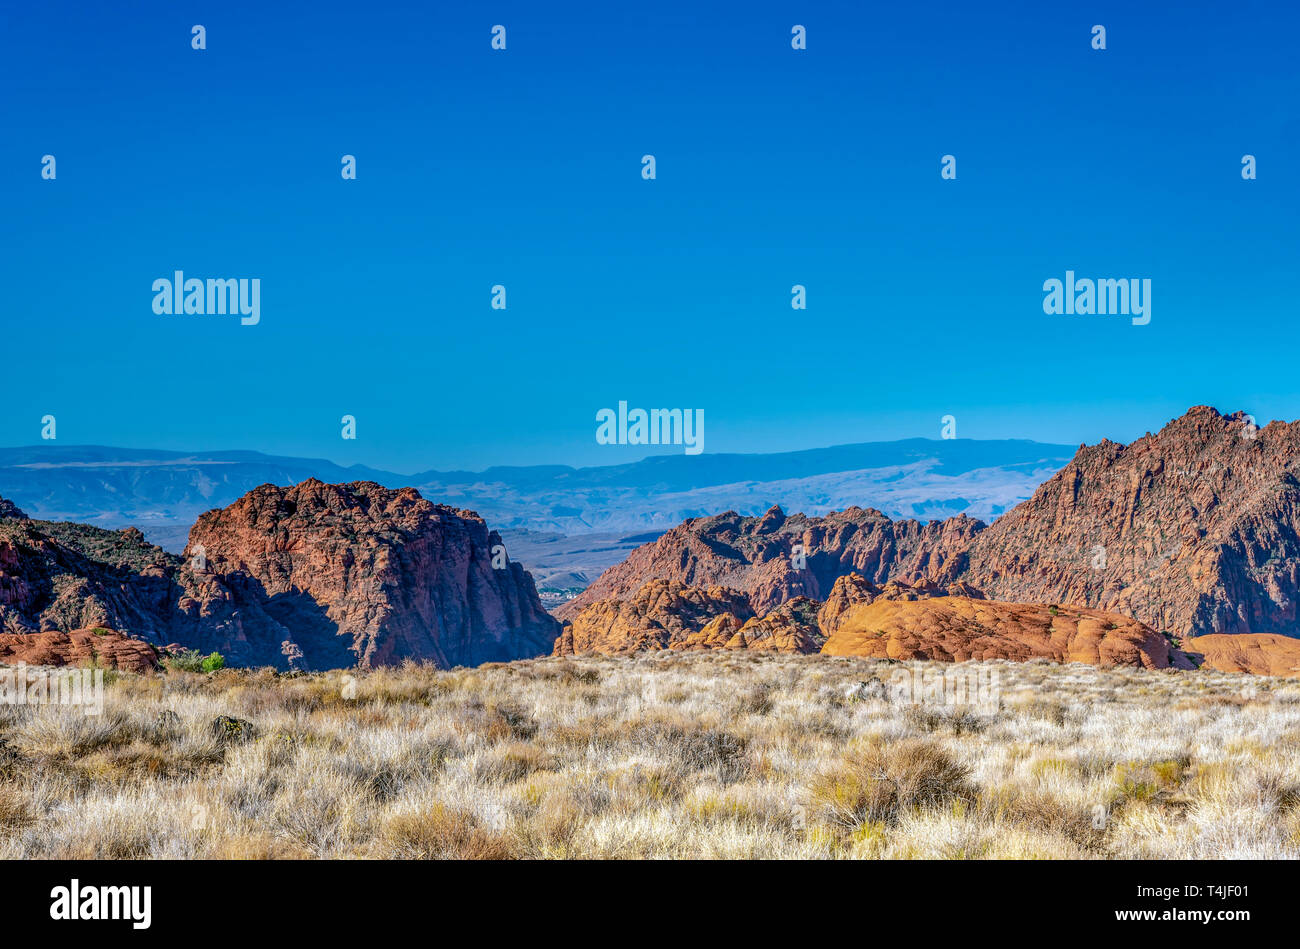 Backcountry wüste Felder mit toten Büsche und Pinsel, steile, felsige Hügel und Berge unter einem blauen Himmel gezackt. Stockfoto